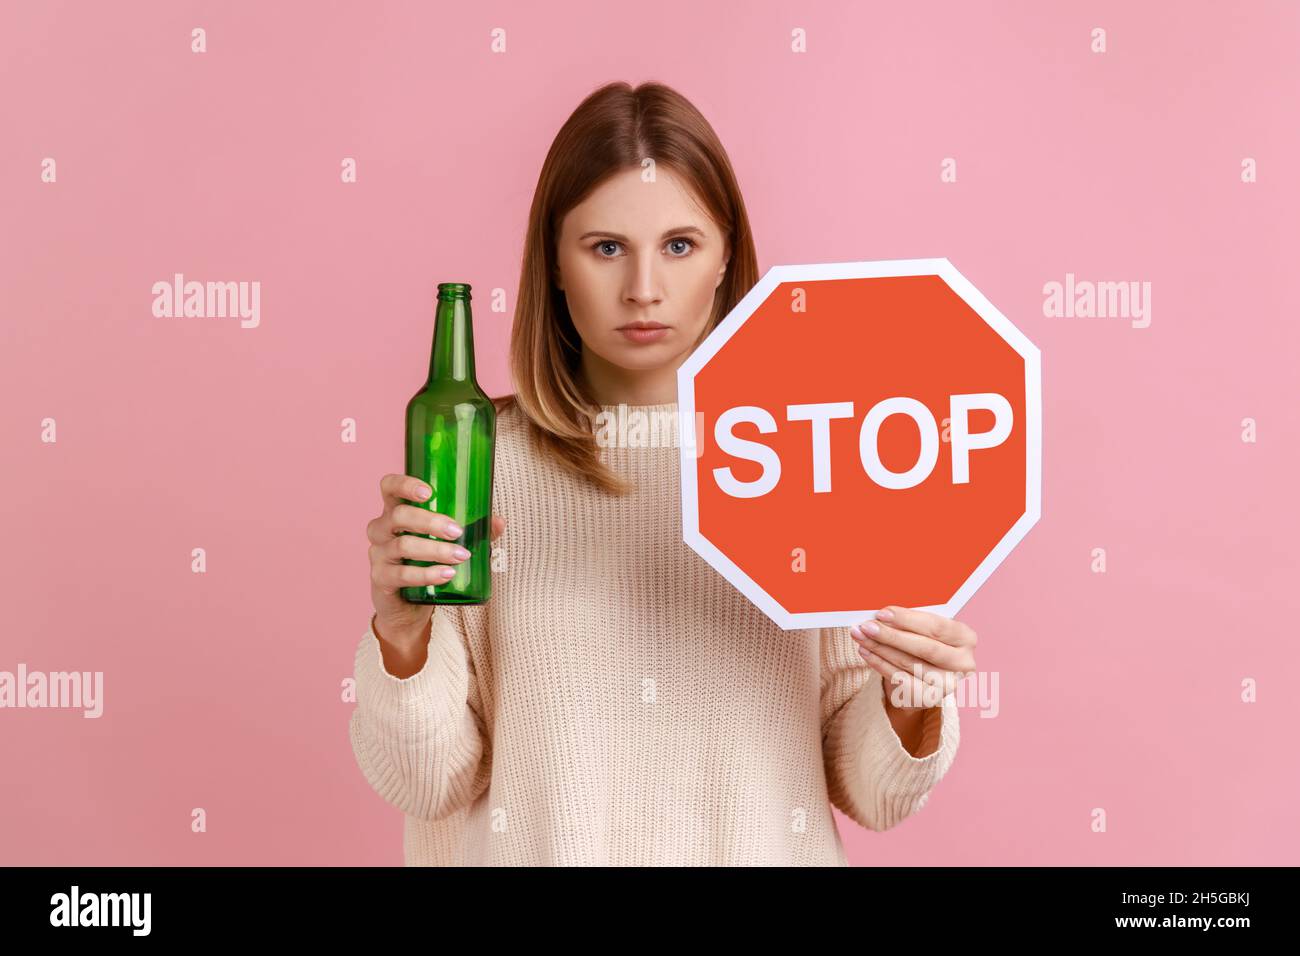 Porträt einer ernsthaften blonden Frau mit rotem Stoppschild und Flasche mit alkoholischem Getränk, Anrufe auf nicht Alkohol trinken, trägt weißen Pullover. Innenaufnahme des Studios isoliert auf rosa Hintergrund. Stockfoto